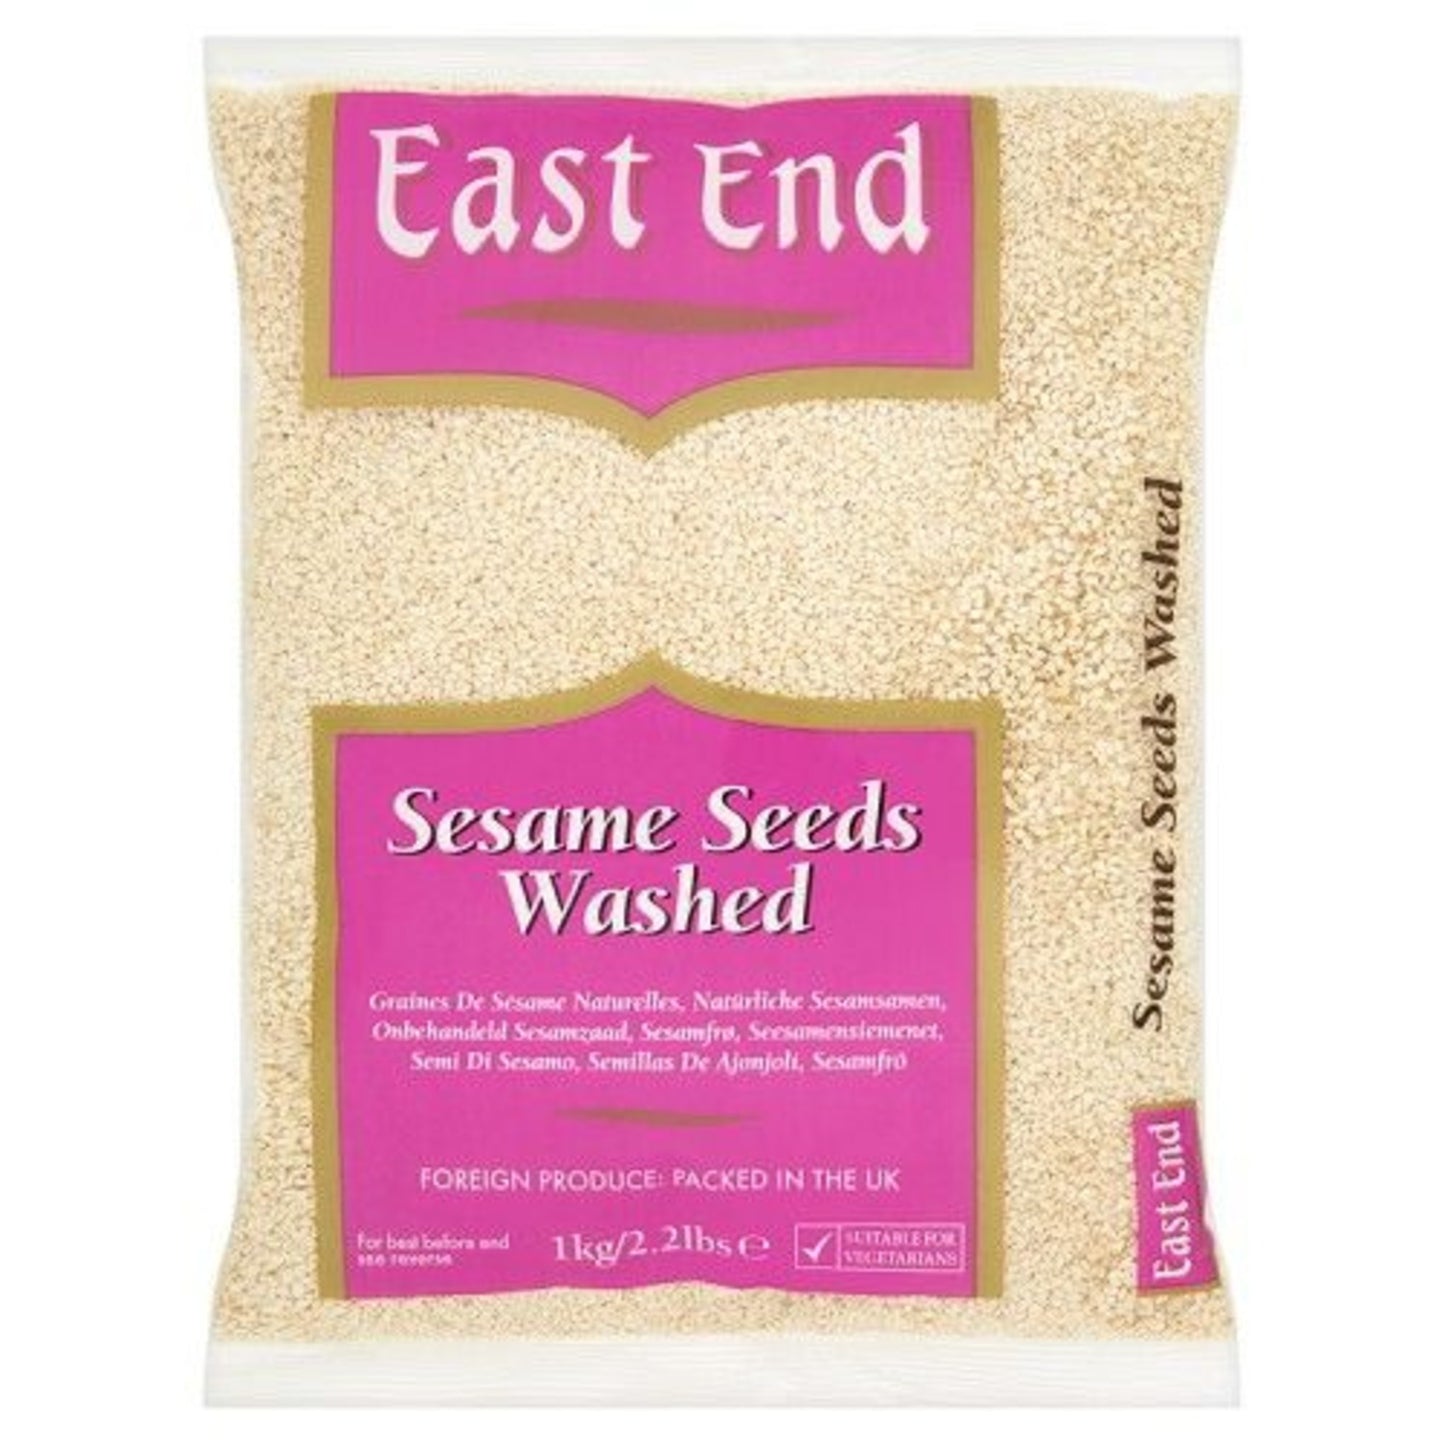 East End Till Seeds (Washed Sesame Seeds) 400g